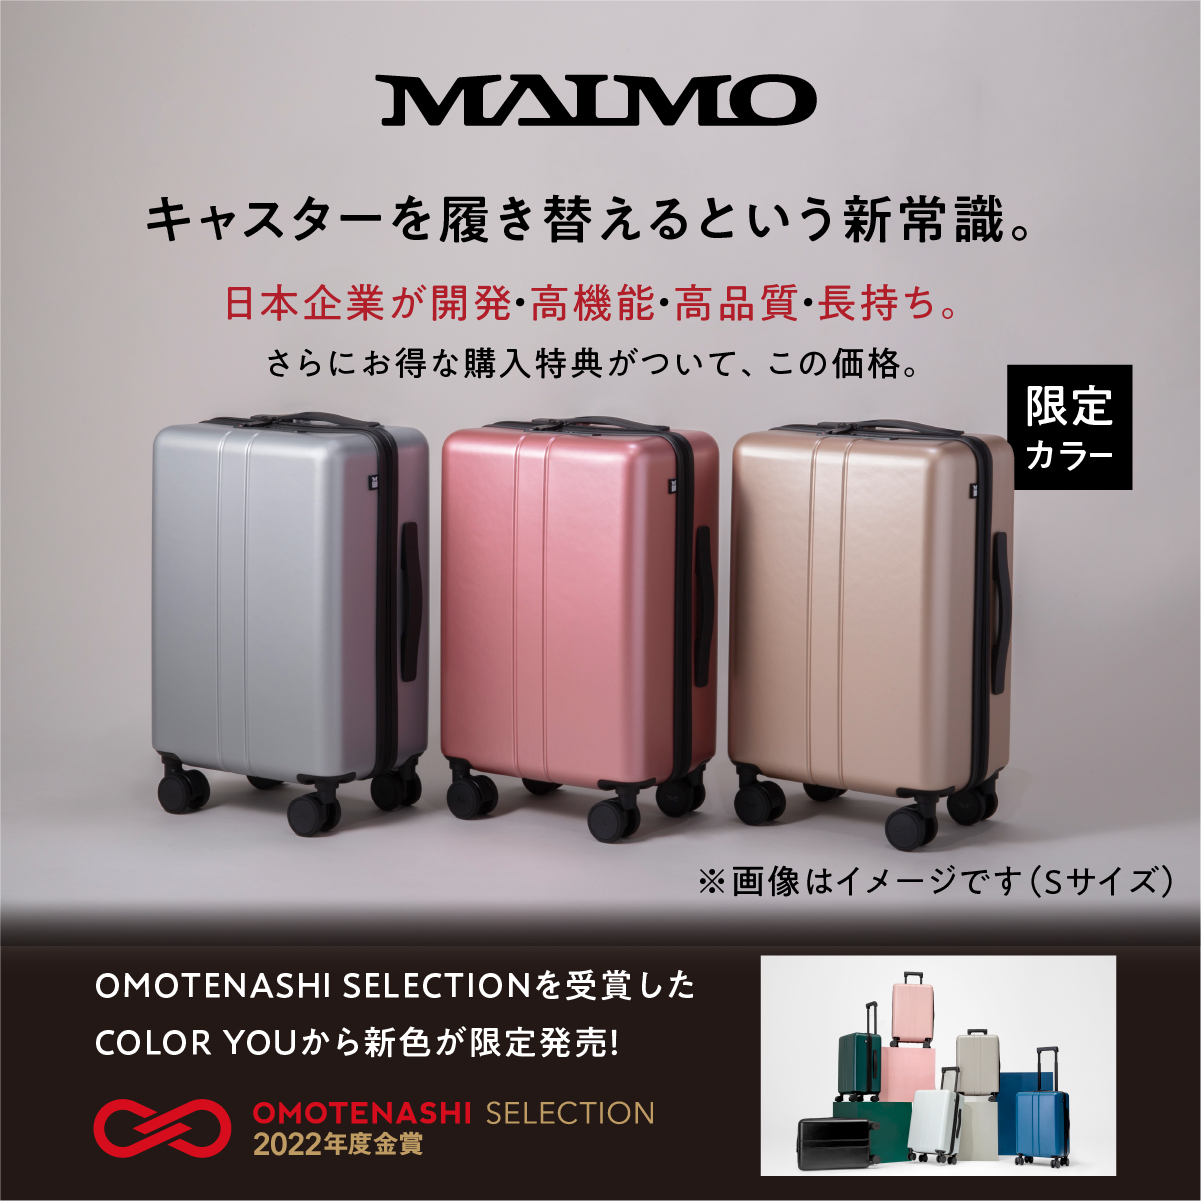 MAIMO スーツケース キャリーケース キャリーバッグ Mサイズ 機内